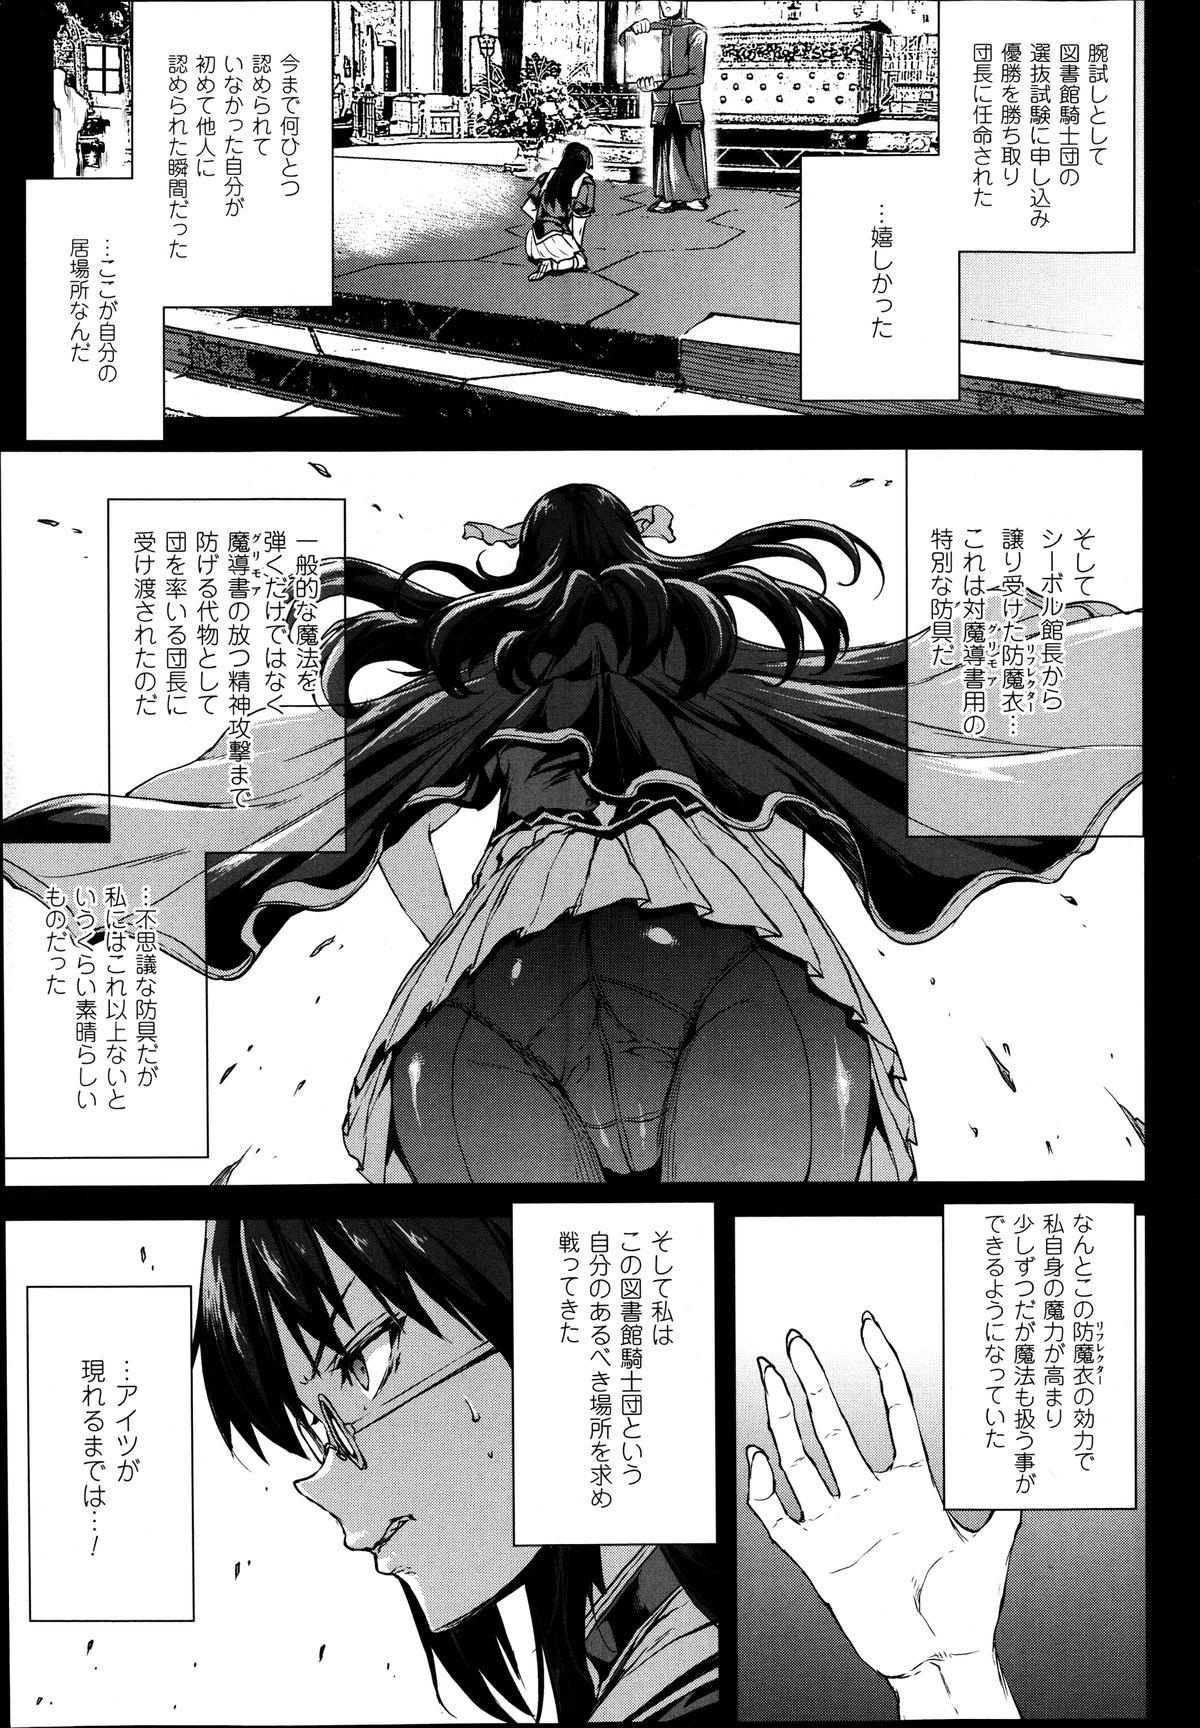 [Erect Sawaru] Shinkyoku no Grimoire -PANDRA saga 2nd story- Ch. 7-12 157